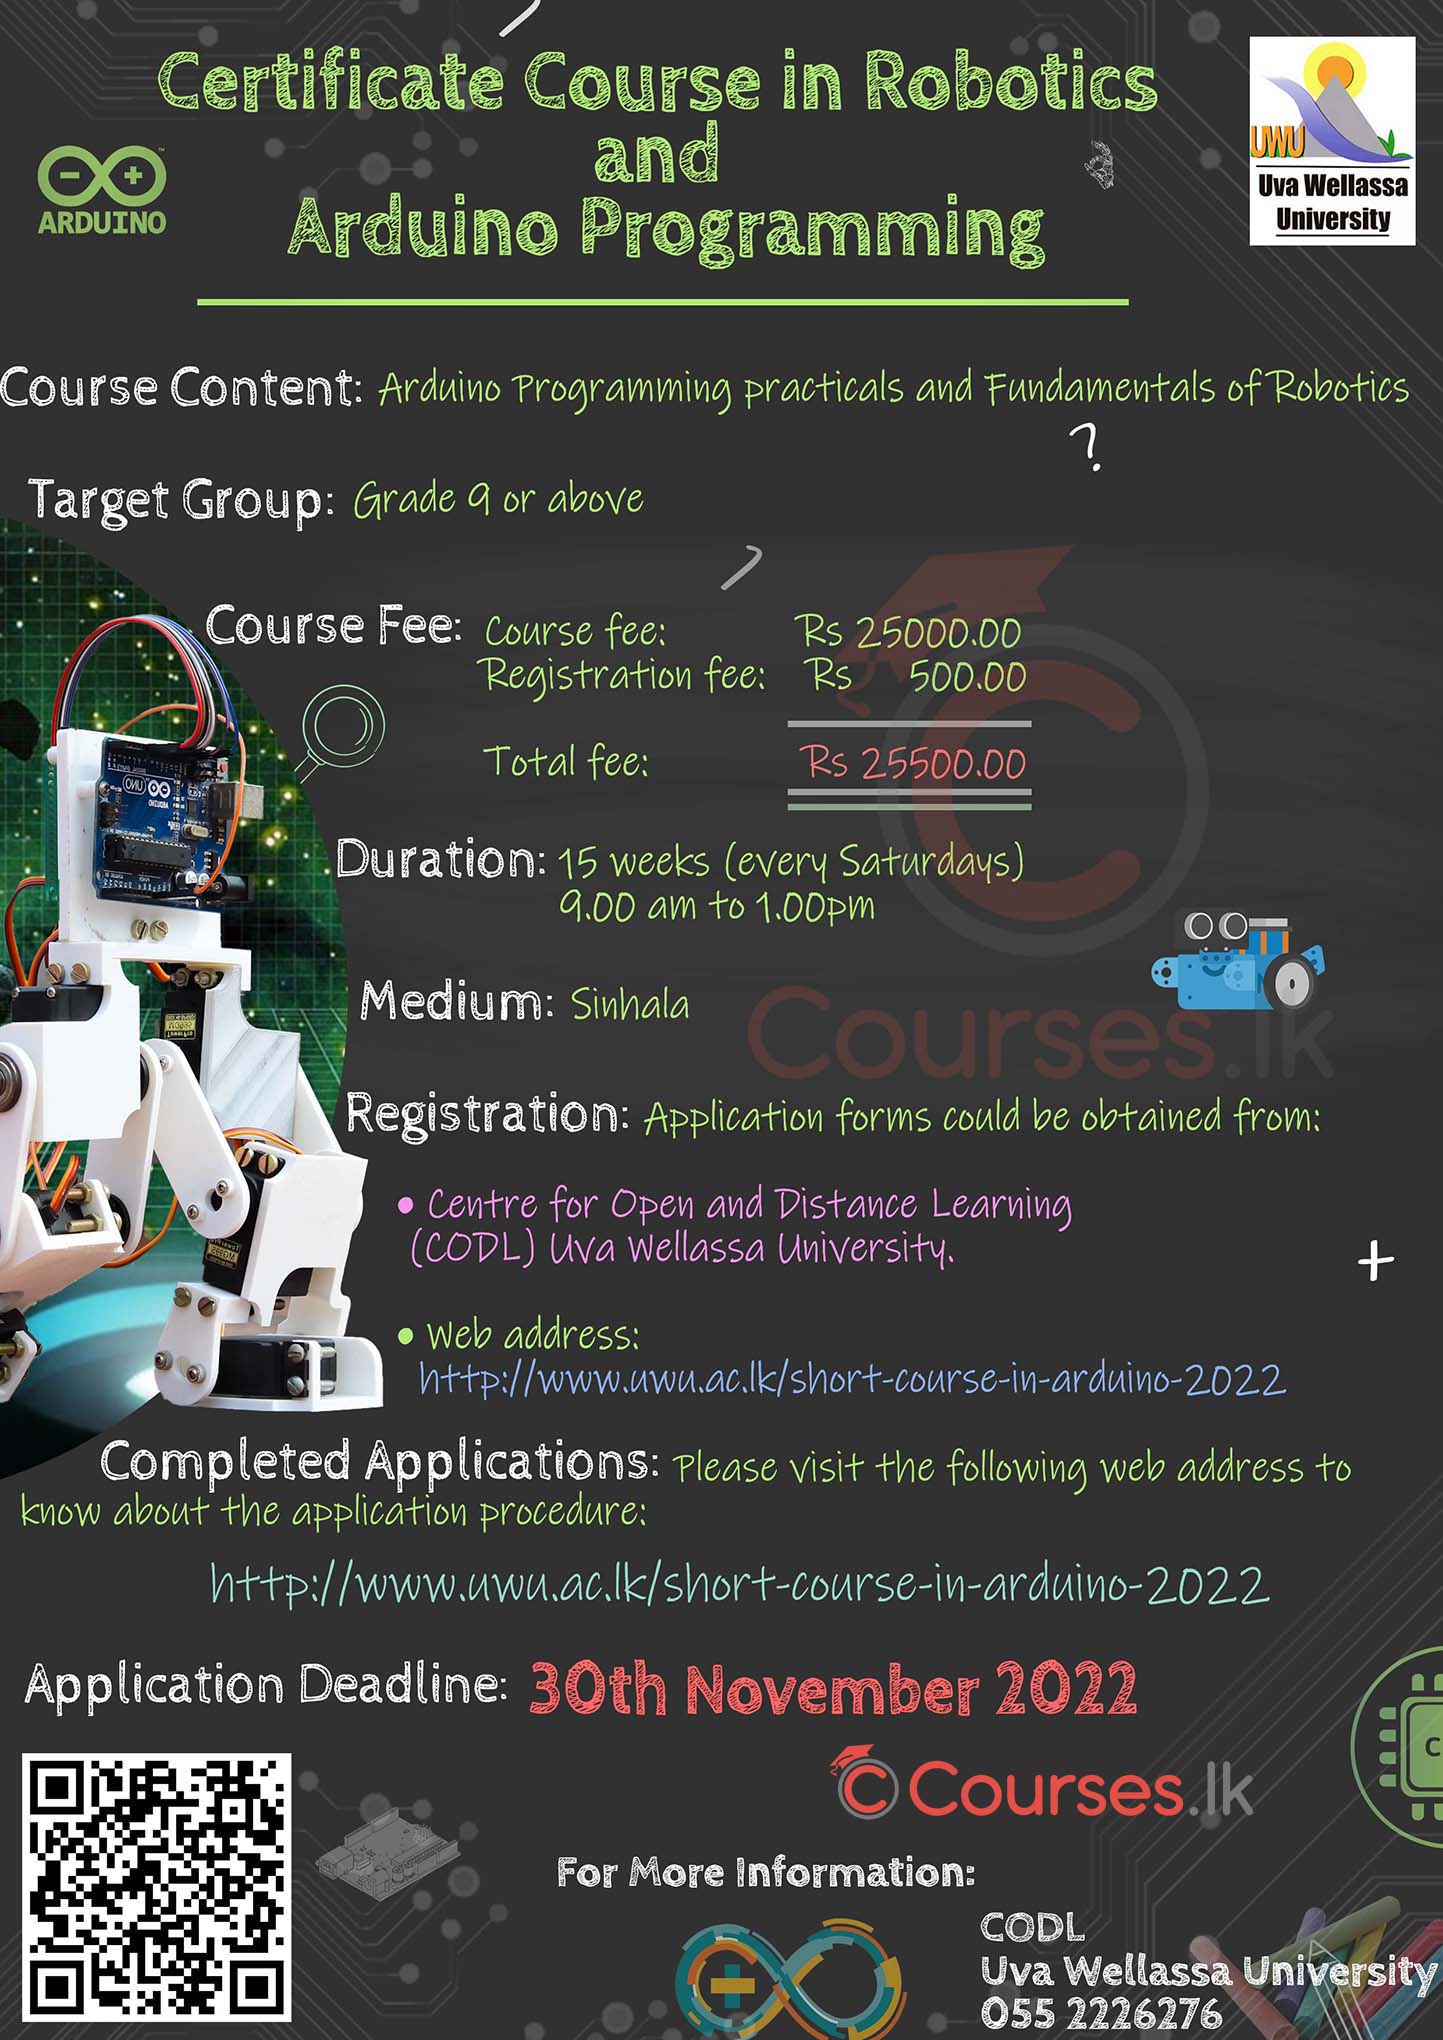 Certificate Course in Robotics and Arduino Programming 2022 - Uva Wellassa University (UWU)